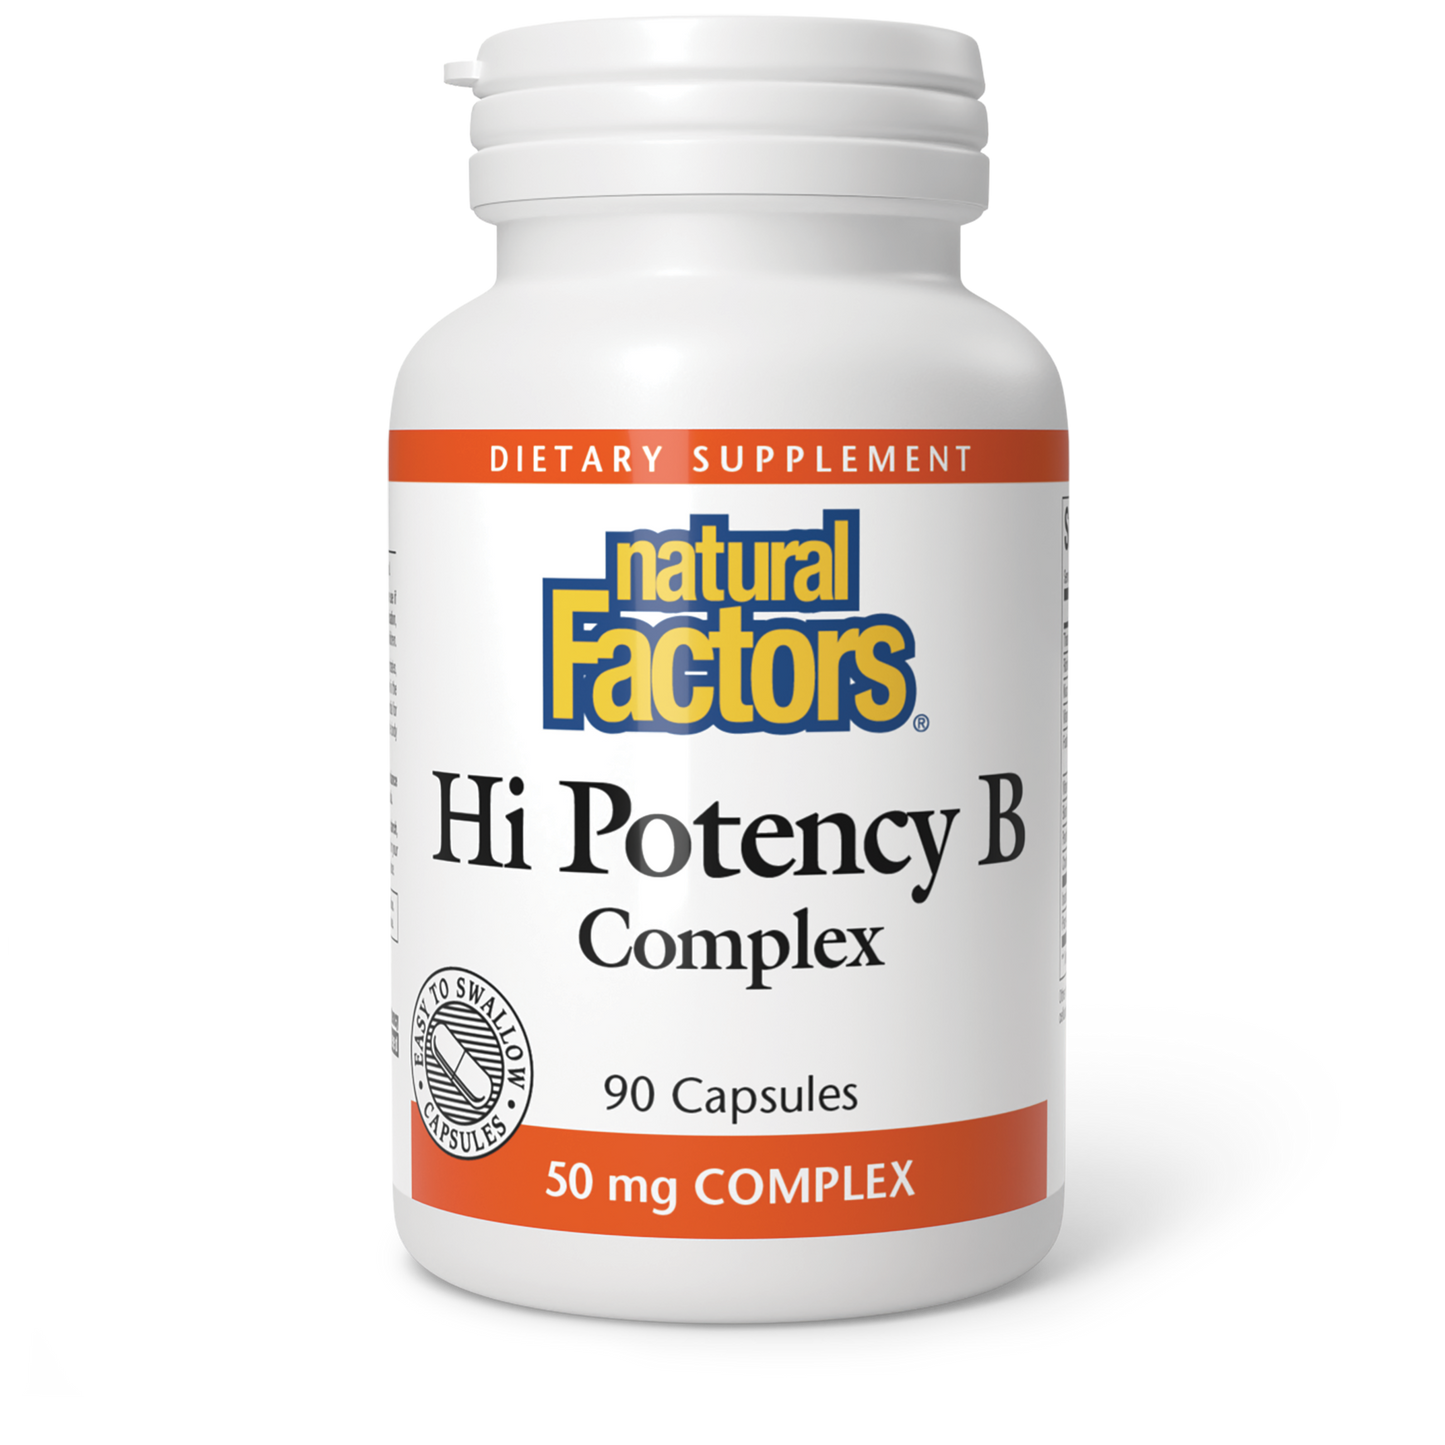 Hi Potency B Complex|variant|hi-res|1121U